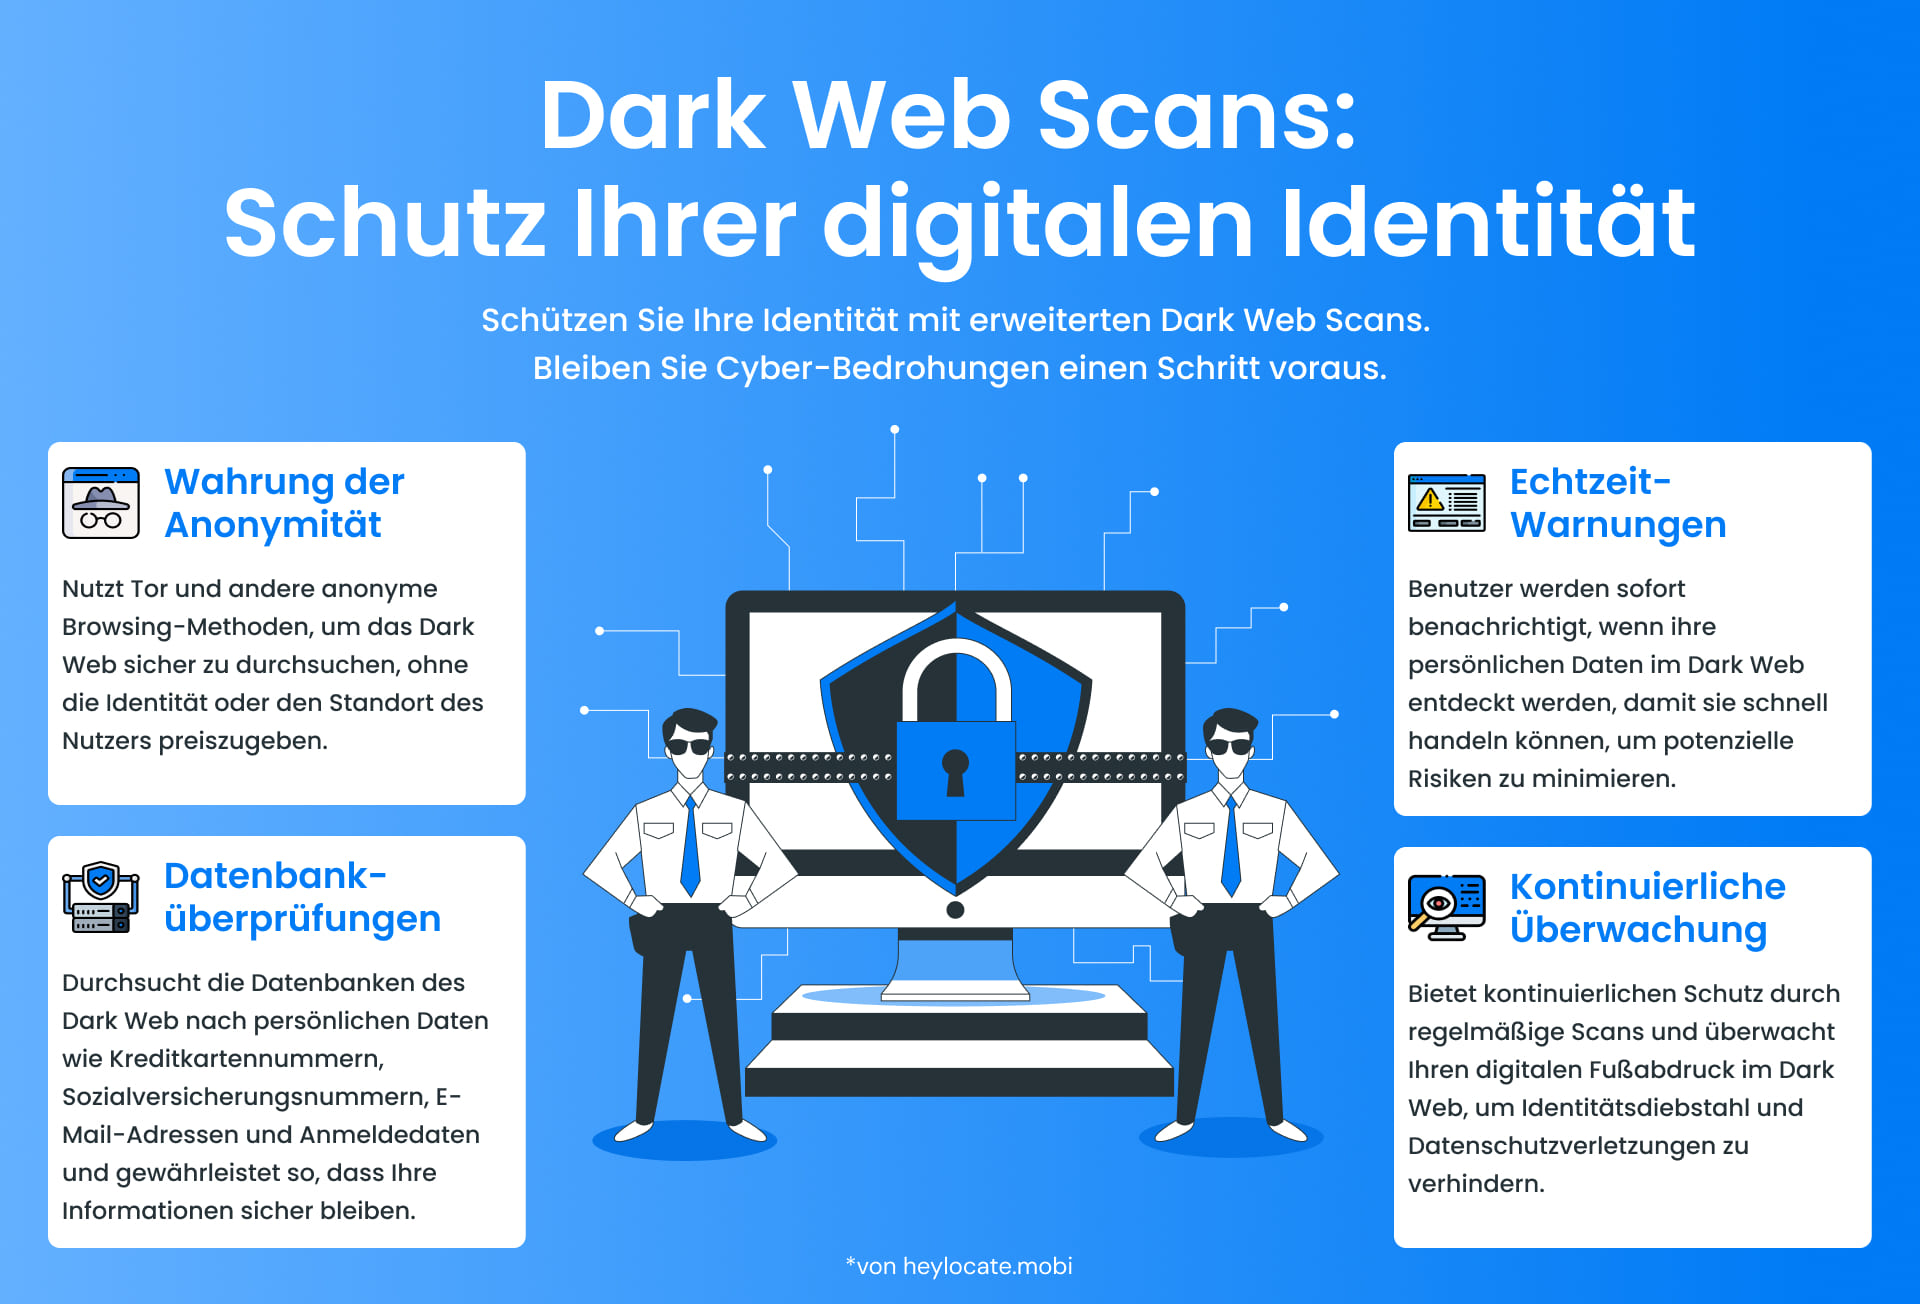 Die Infografik zeigt zwei Männer und einen Laptop in der Mitte mit Informationen über das Scannen des Dark Web zum Schutz der digitalen Identität. Es werden vier wichtige Vorteile mit detaillierten Schritten und Überwachungsstrategien vorgestellt